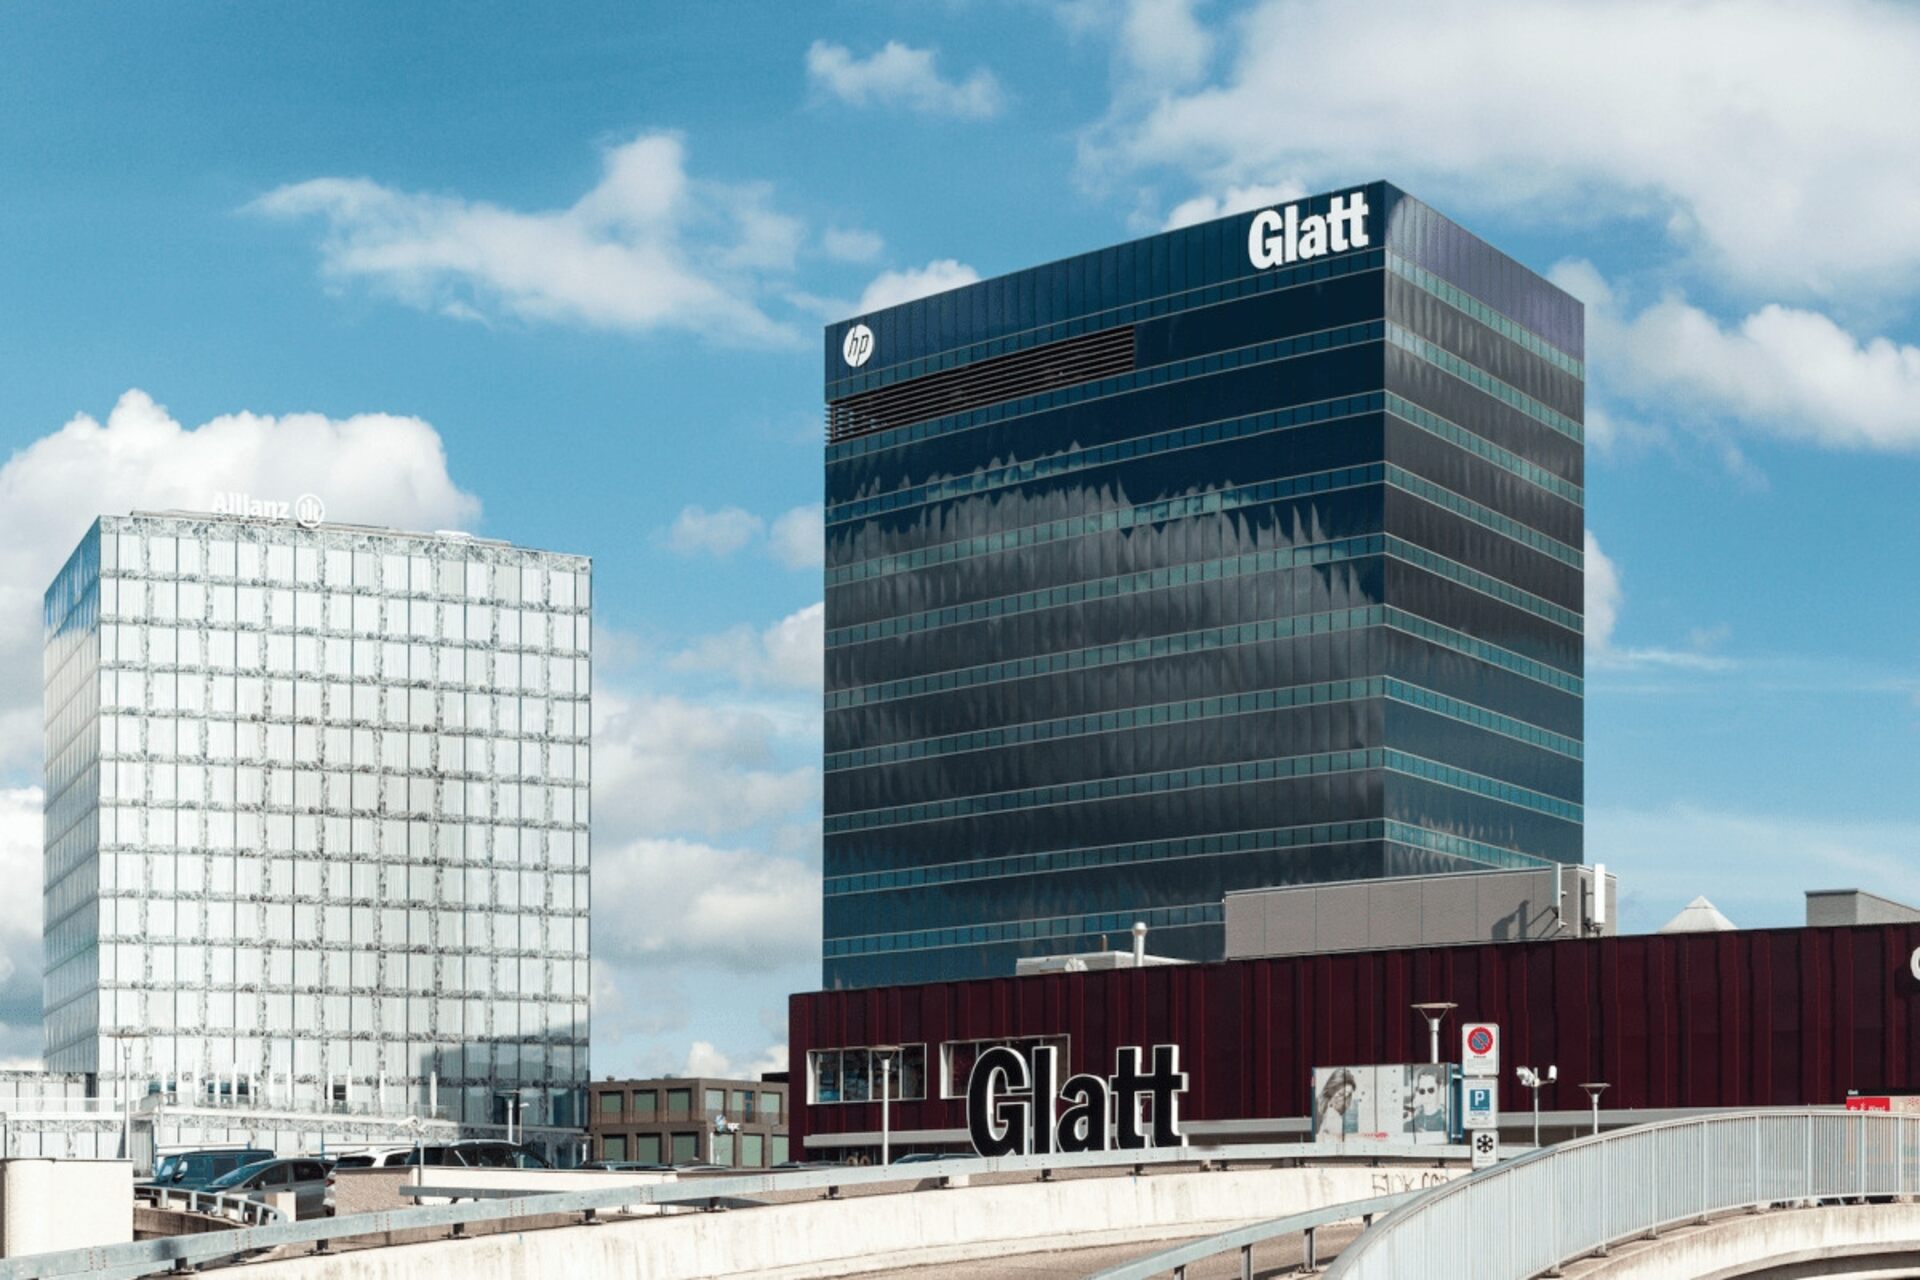 Pakalpojumu vadība: Einkaufszentrum Glatt, kas atrodas 99 Neue Winterthurerstrasse, Wallisen, aptuveni divdesmit minūšu S-Bahn brauciena attālumā no Cīrihes centra, 21. gada 2024. martā rīkos ikgadējo itSMF Switzerland pasākumu.